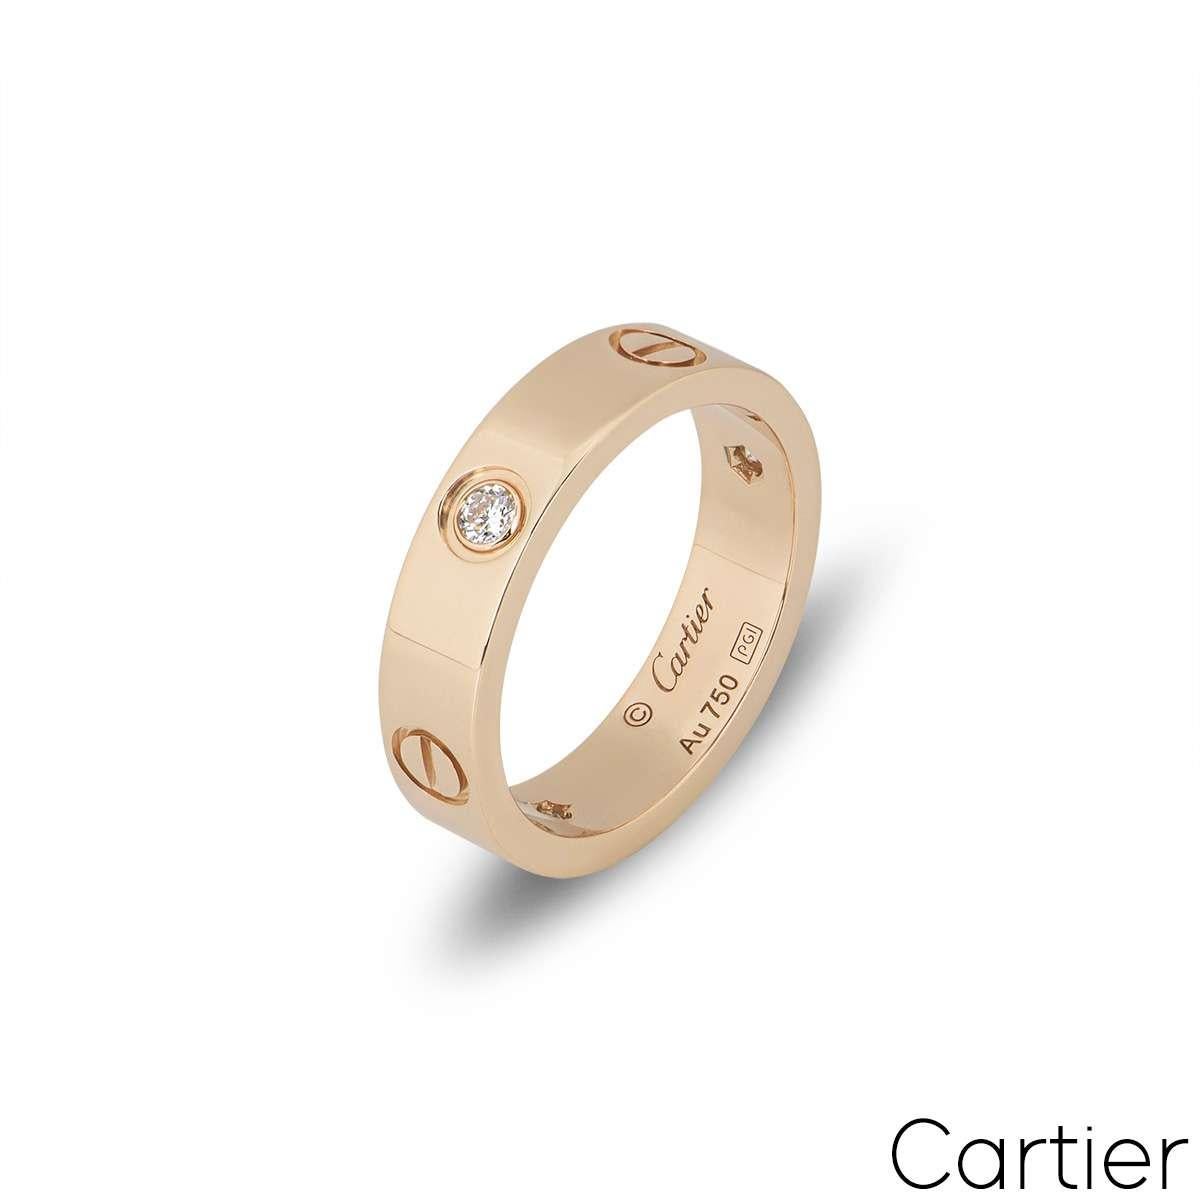 Ein charakteristischer Ring aus der Collection'S Love von Cartier in Roségold. Der Ring ist mit 3 runden Diamanten im Brillantschliff von insgesamt 0,22 ct besetzt, die sich mit den ikonischen Cartier-Schrauben in der Mitte des Bandes abwechseln.